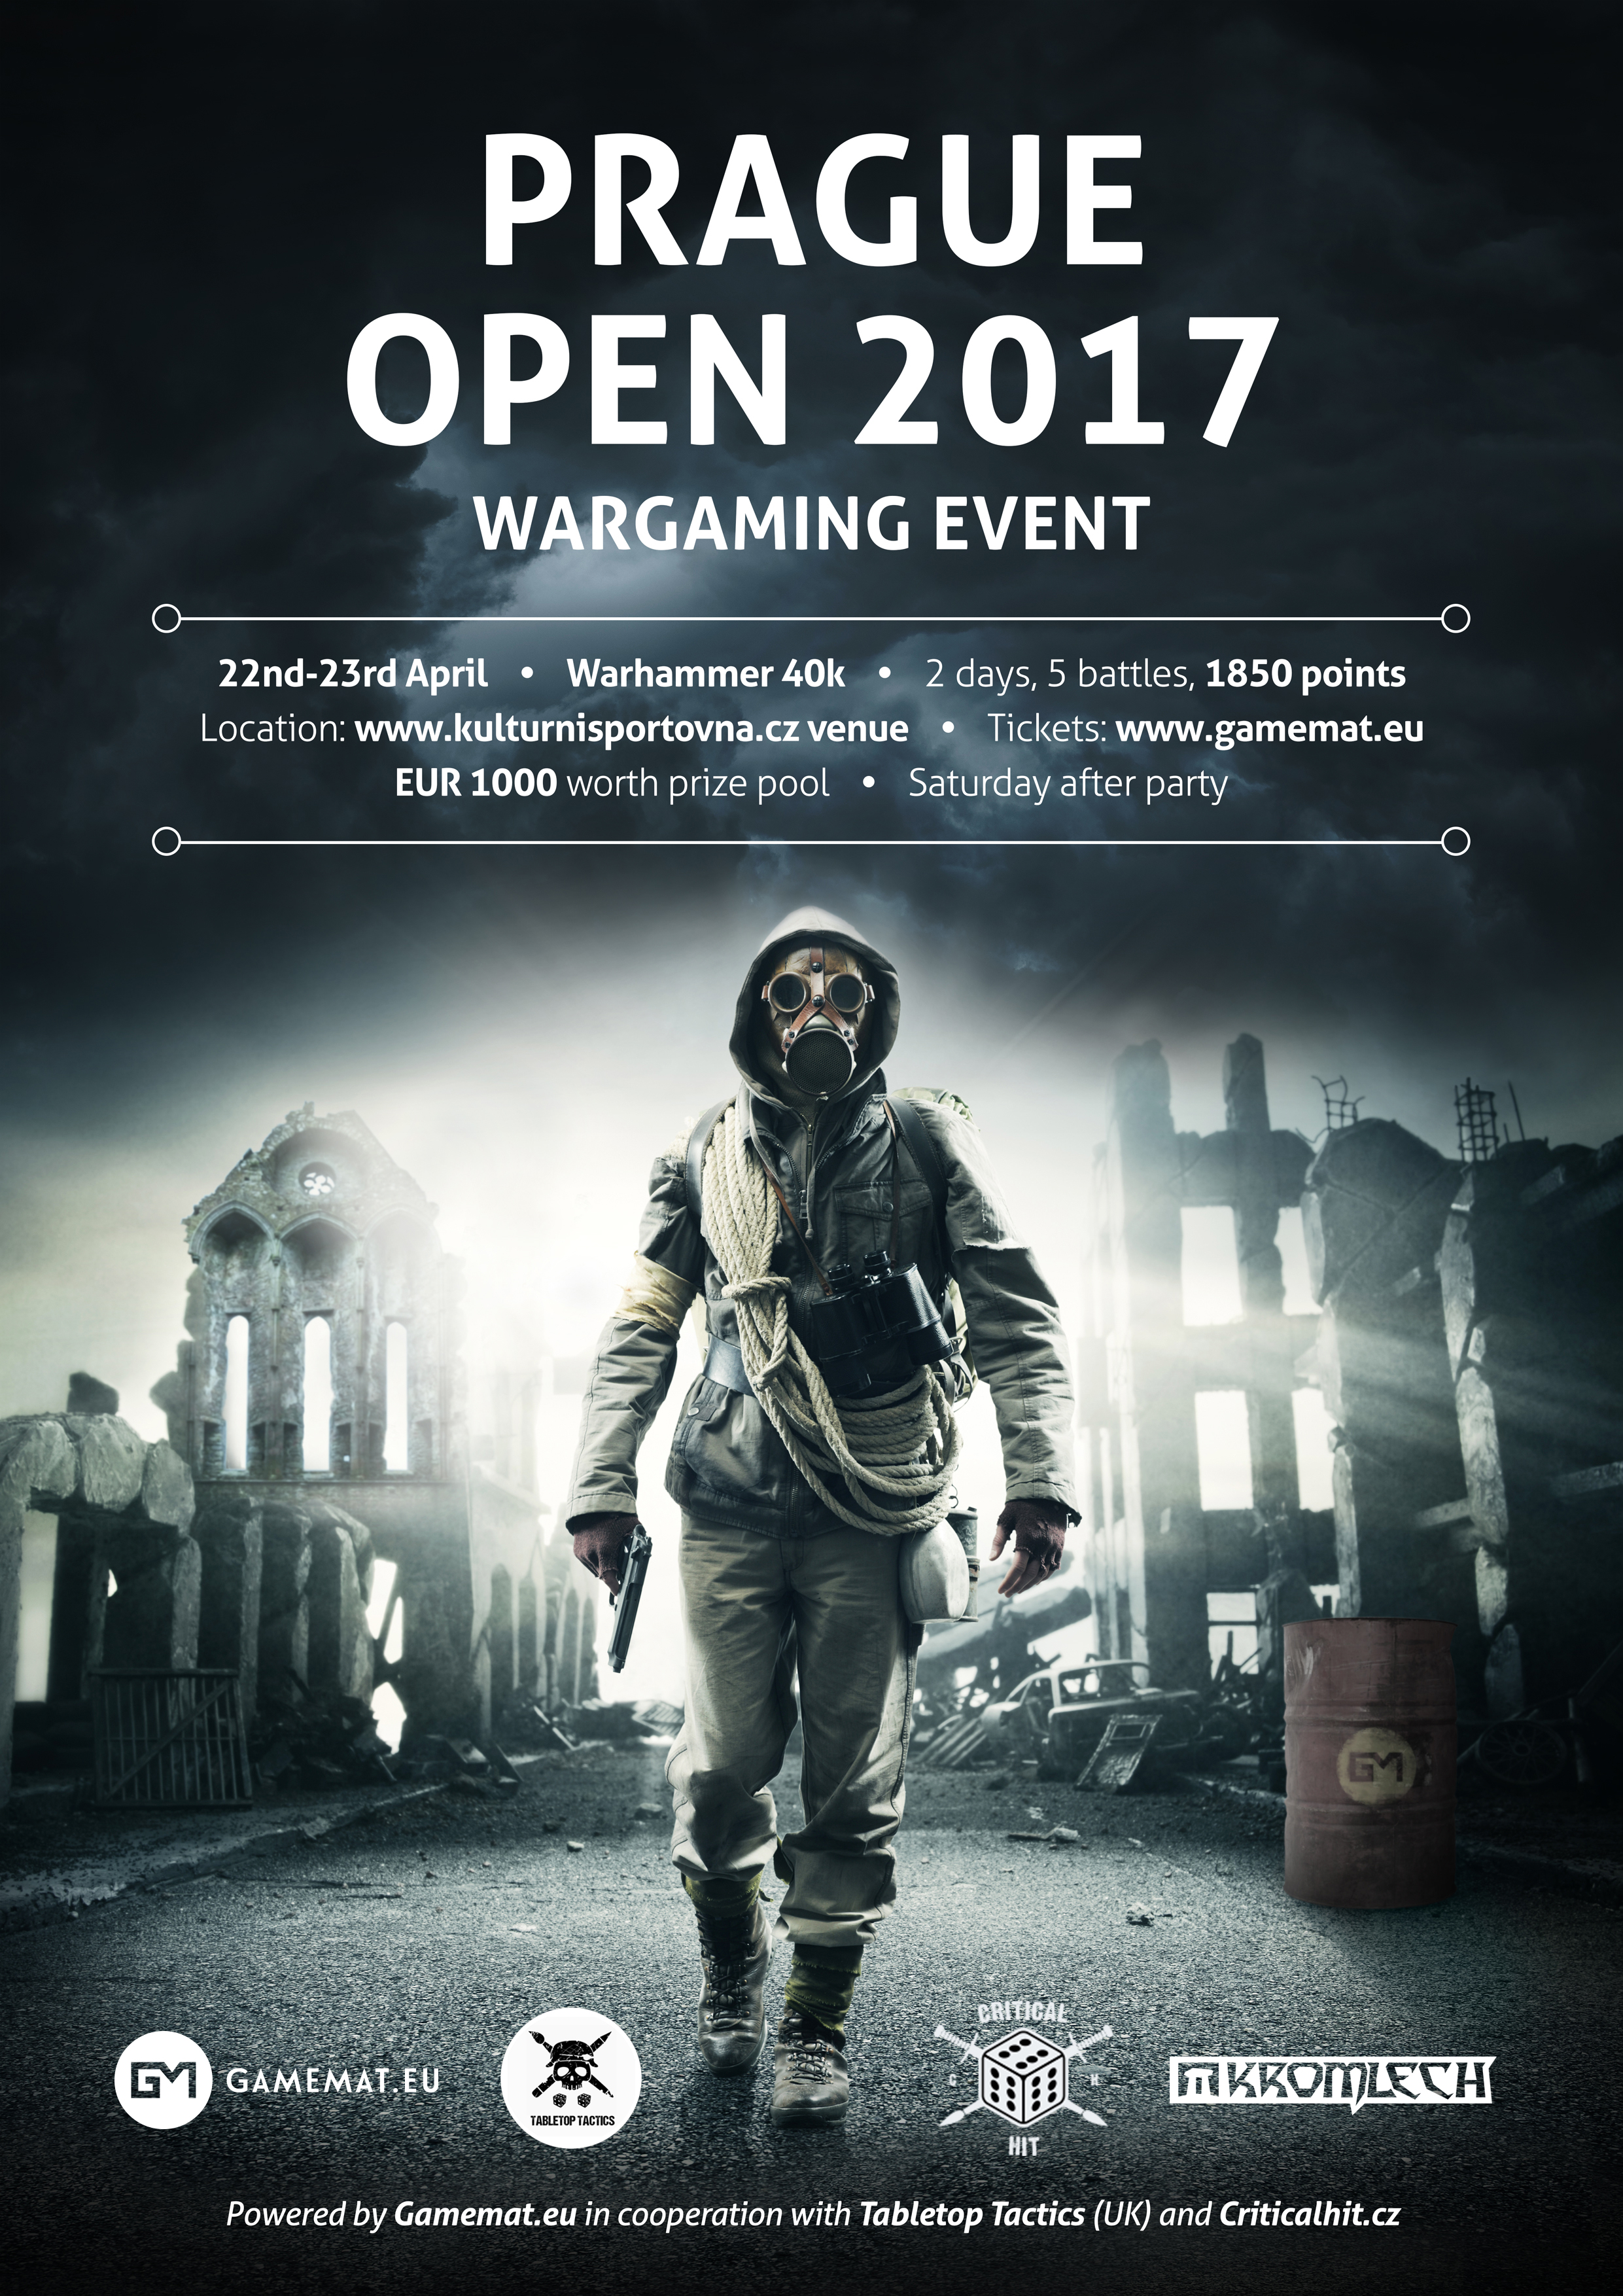 PRAGUE OPEN 2017 WARGAMING EVENT by Gamemat.eu